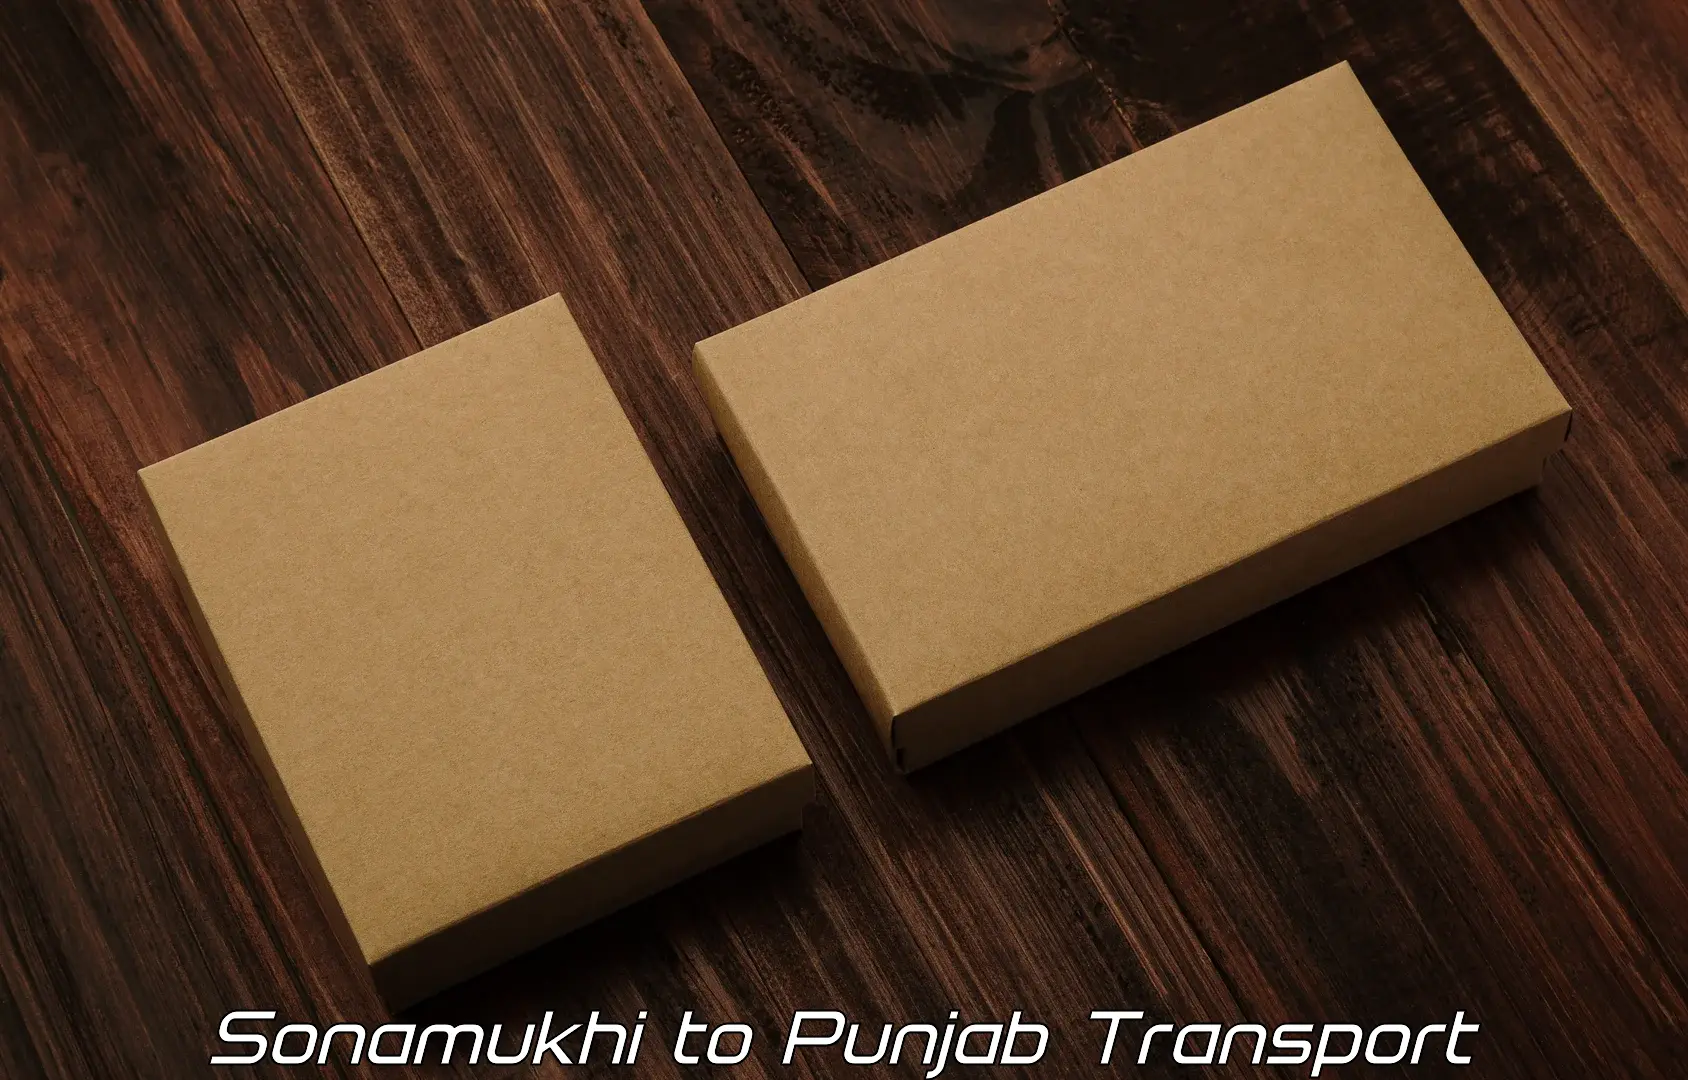 Interstate transport services Sonamukhi to Punjab